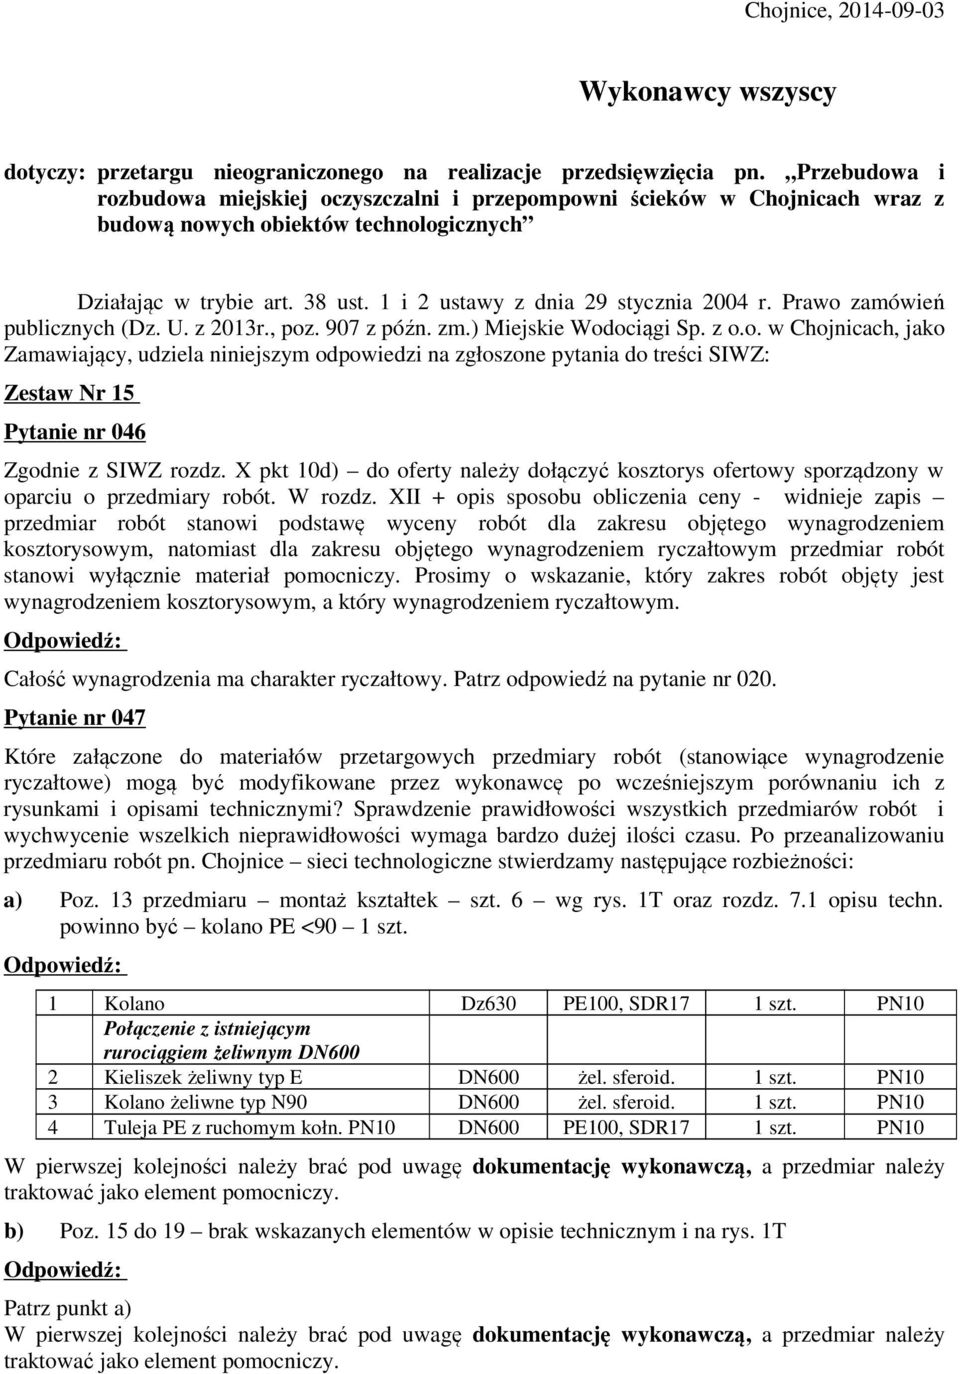 Prawo zamówień publicznych (Dz. U. z 2013r., poz. 907 z późn. zm.) Miejskie Wodociągi Sp. z o.o. w Chojnicach, jako Zamawiający, udziela niniejszym odpowiedzi na zgłoszone pytania do treści SIWZ: Zestaw Nr 15 Pytanie nr 046 Zgodnie z SIWZ rozdz.